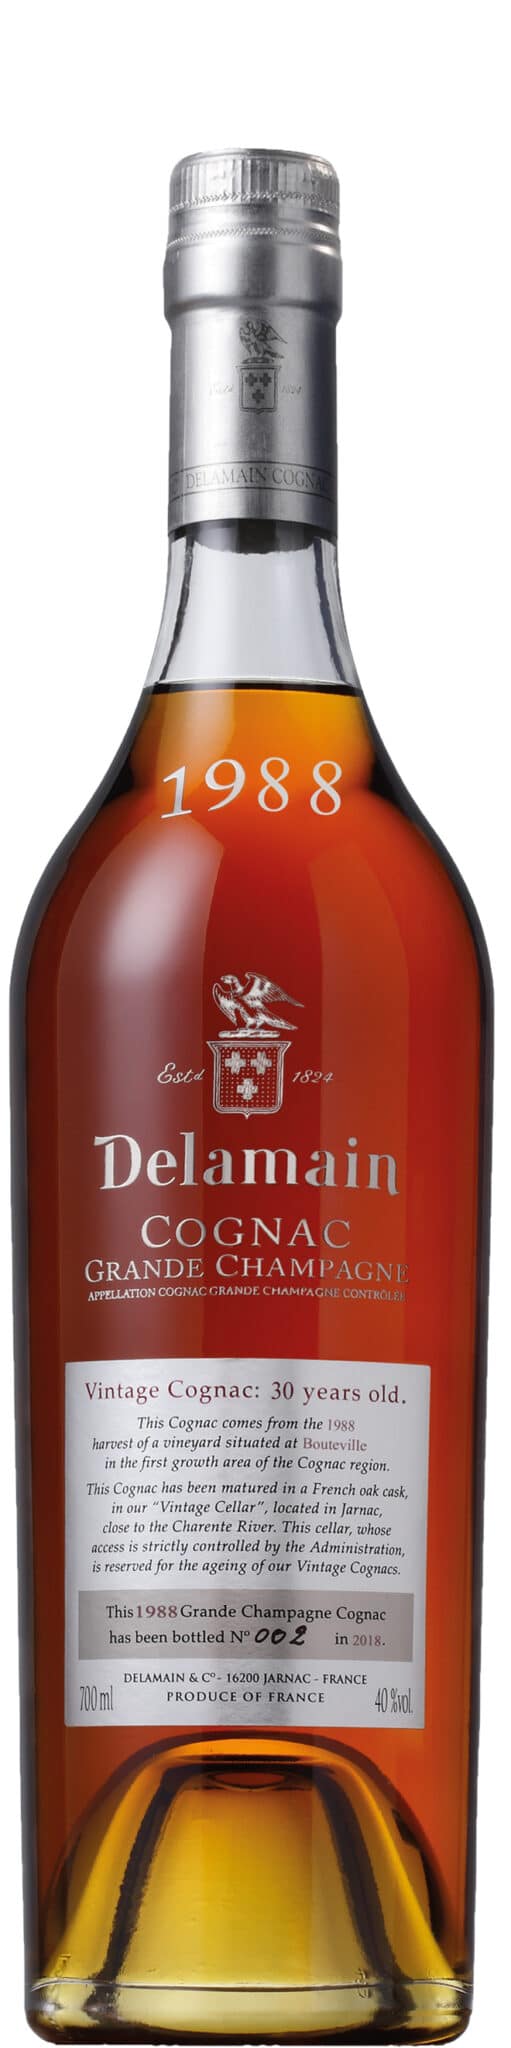 Vintage Cognac